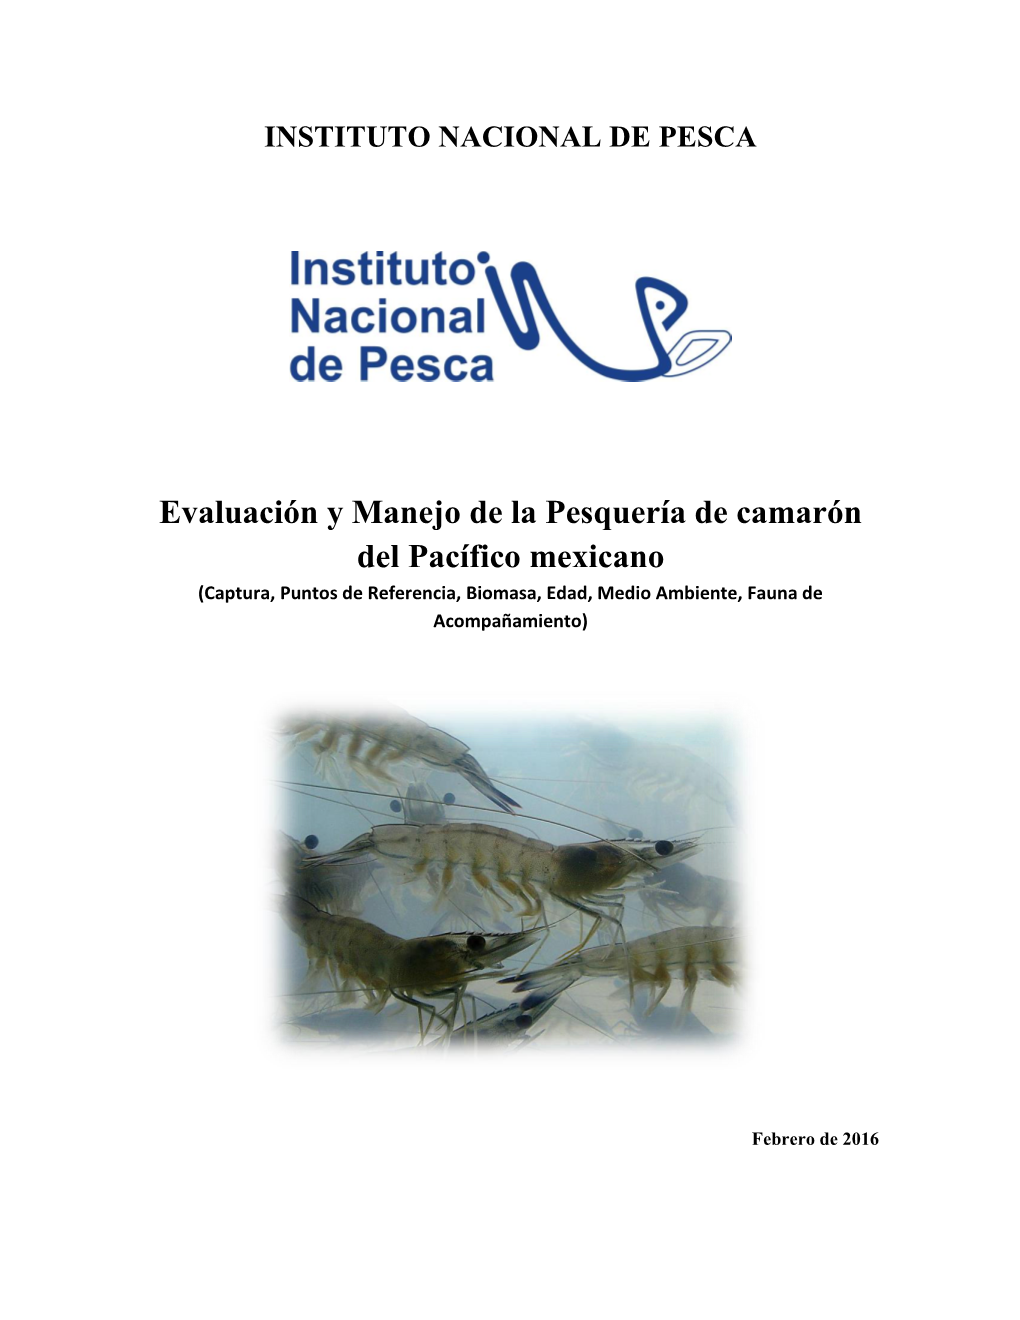 Evaluación Y Manejo De La Pesquería De Camarón Del Pacífico Mexicano (Captura, Puntos De Referencia, Biomasa, Edad, Medio Ambiente, Fauna De Acompañamiento)